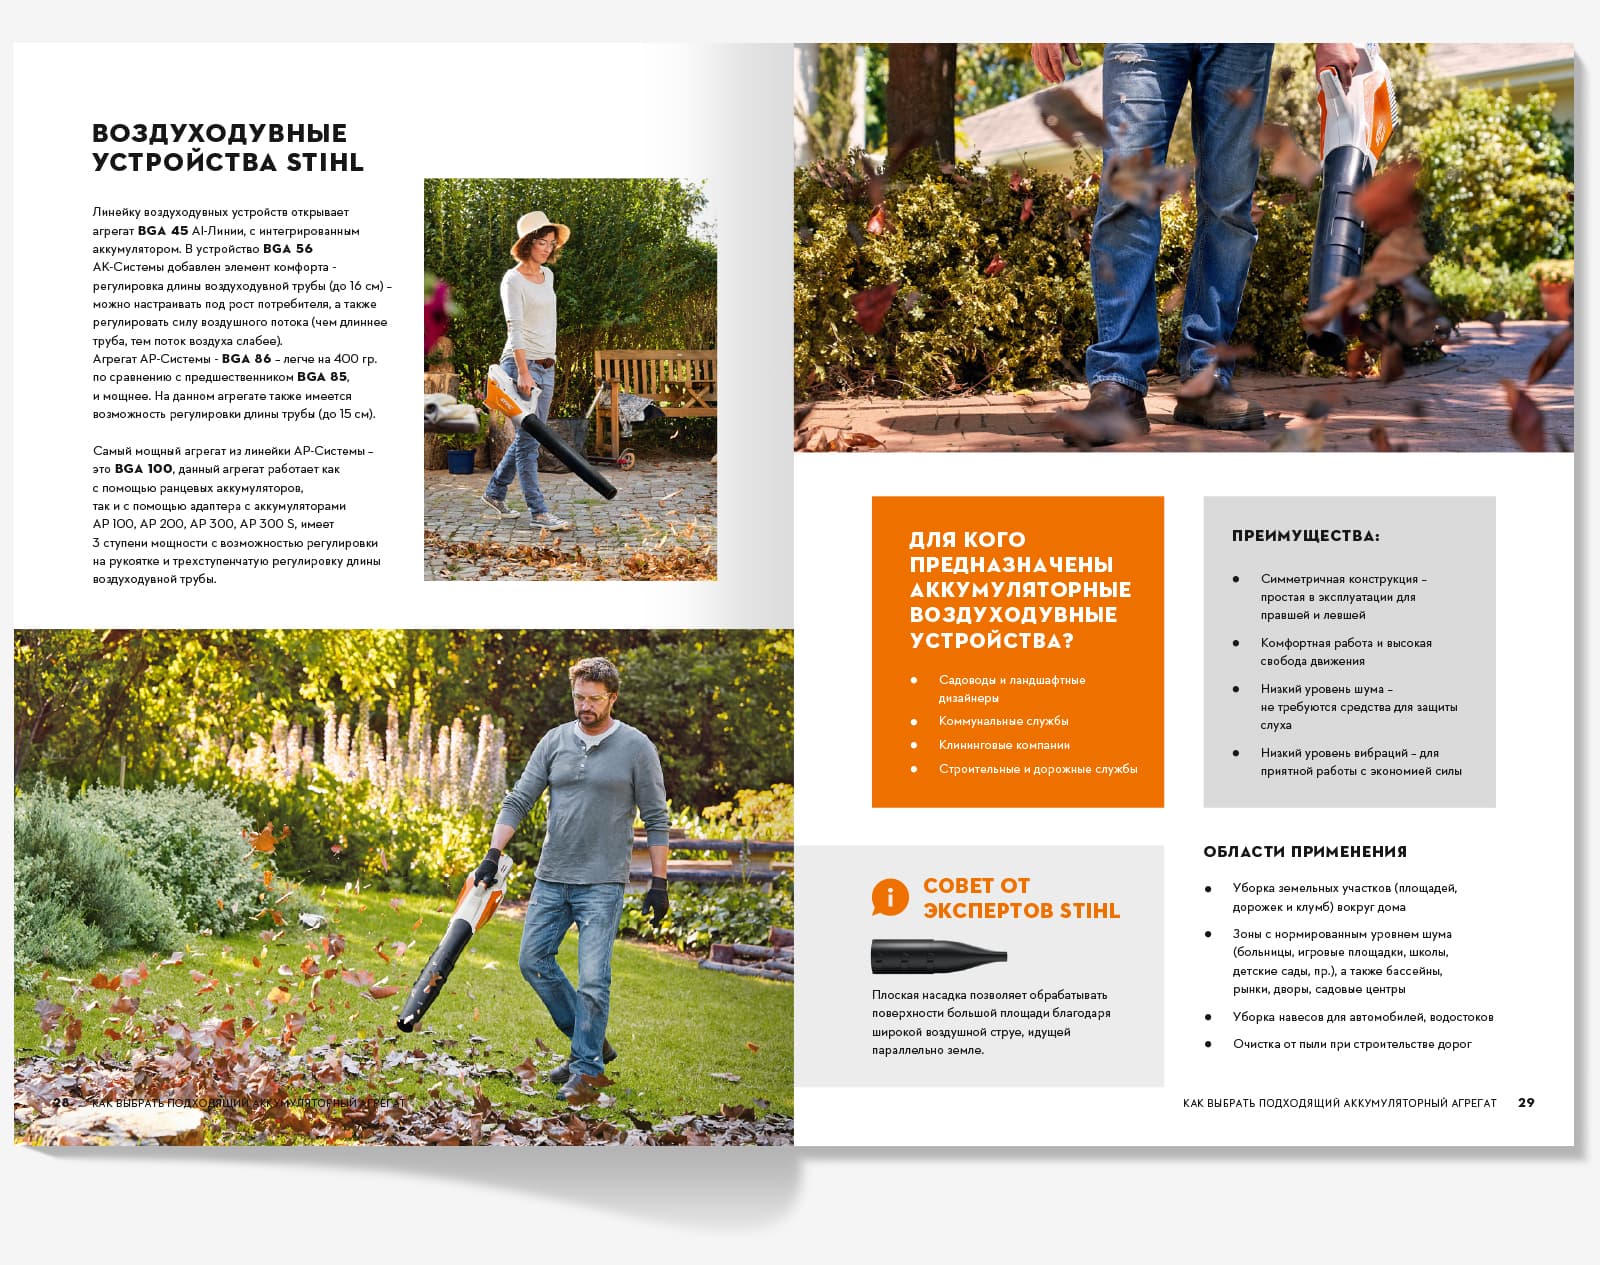 Сделали дизайн брошюры «Как легко и бесшумно работать в саду» для компании STIHL